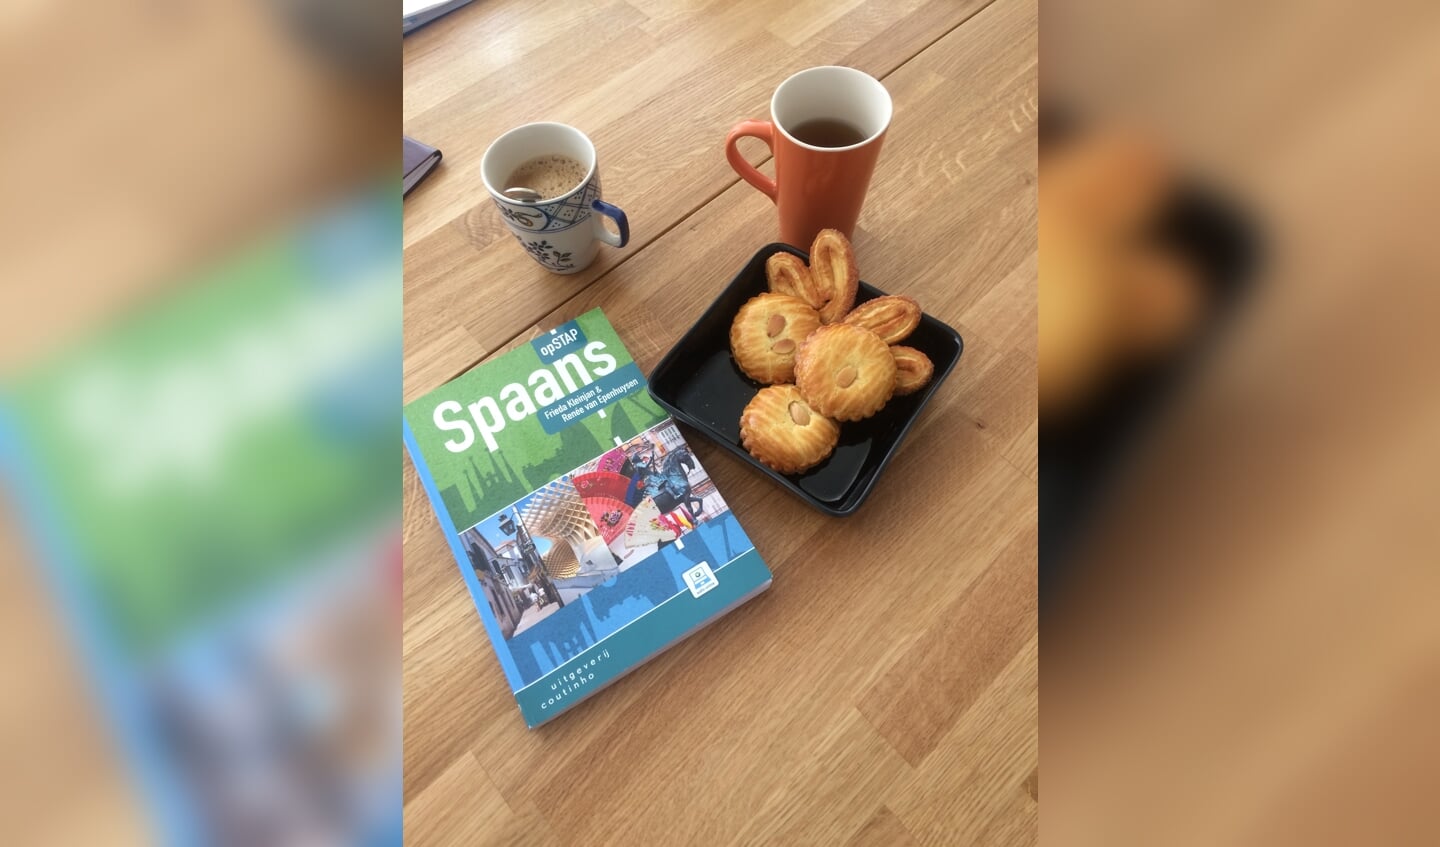 Boek Spaans en Koffie